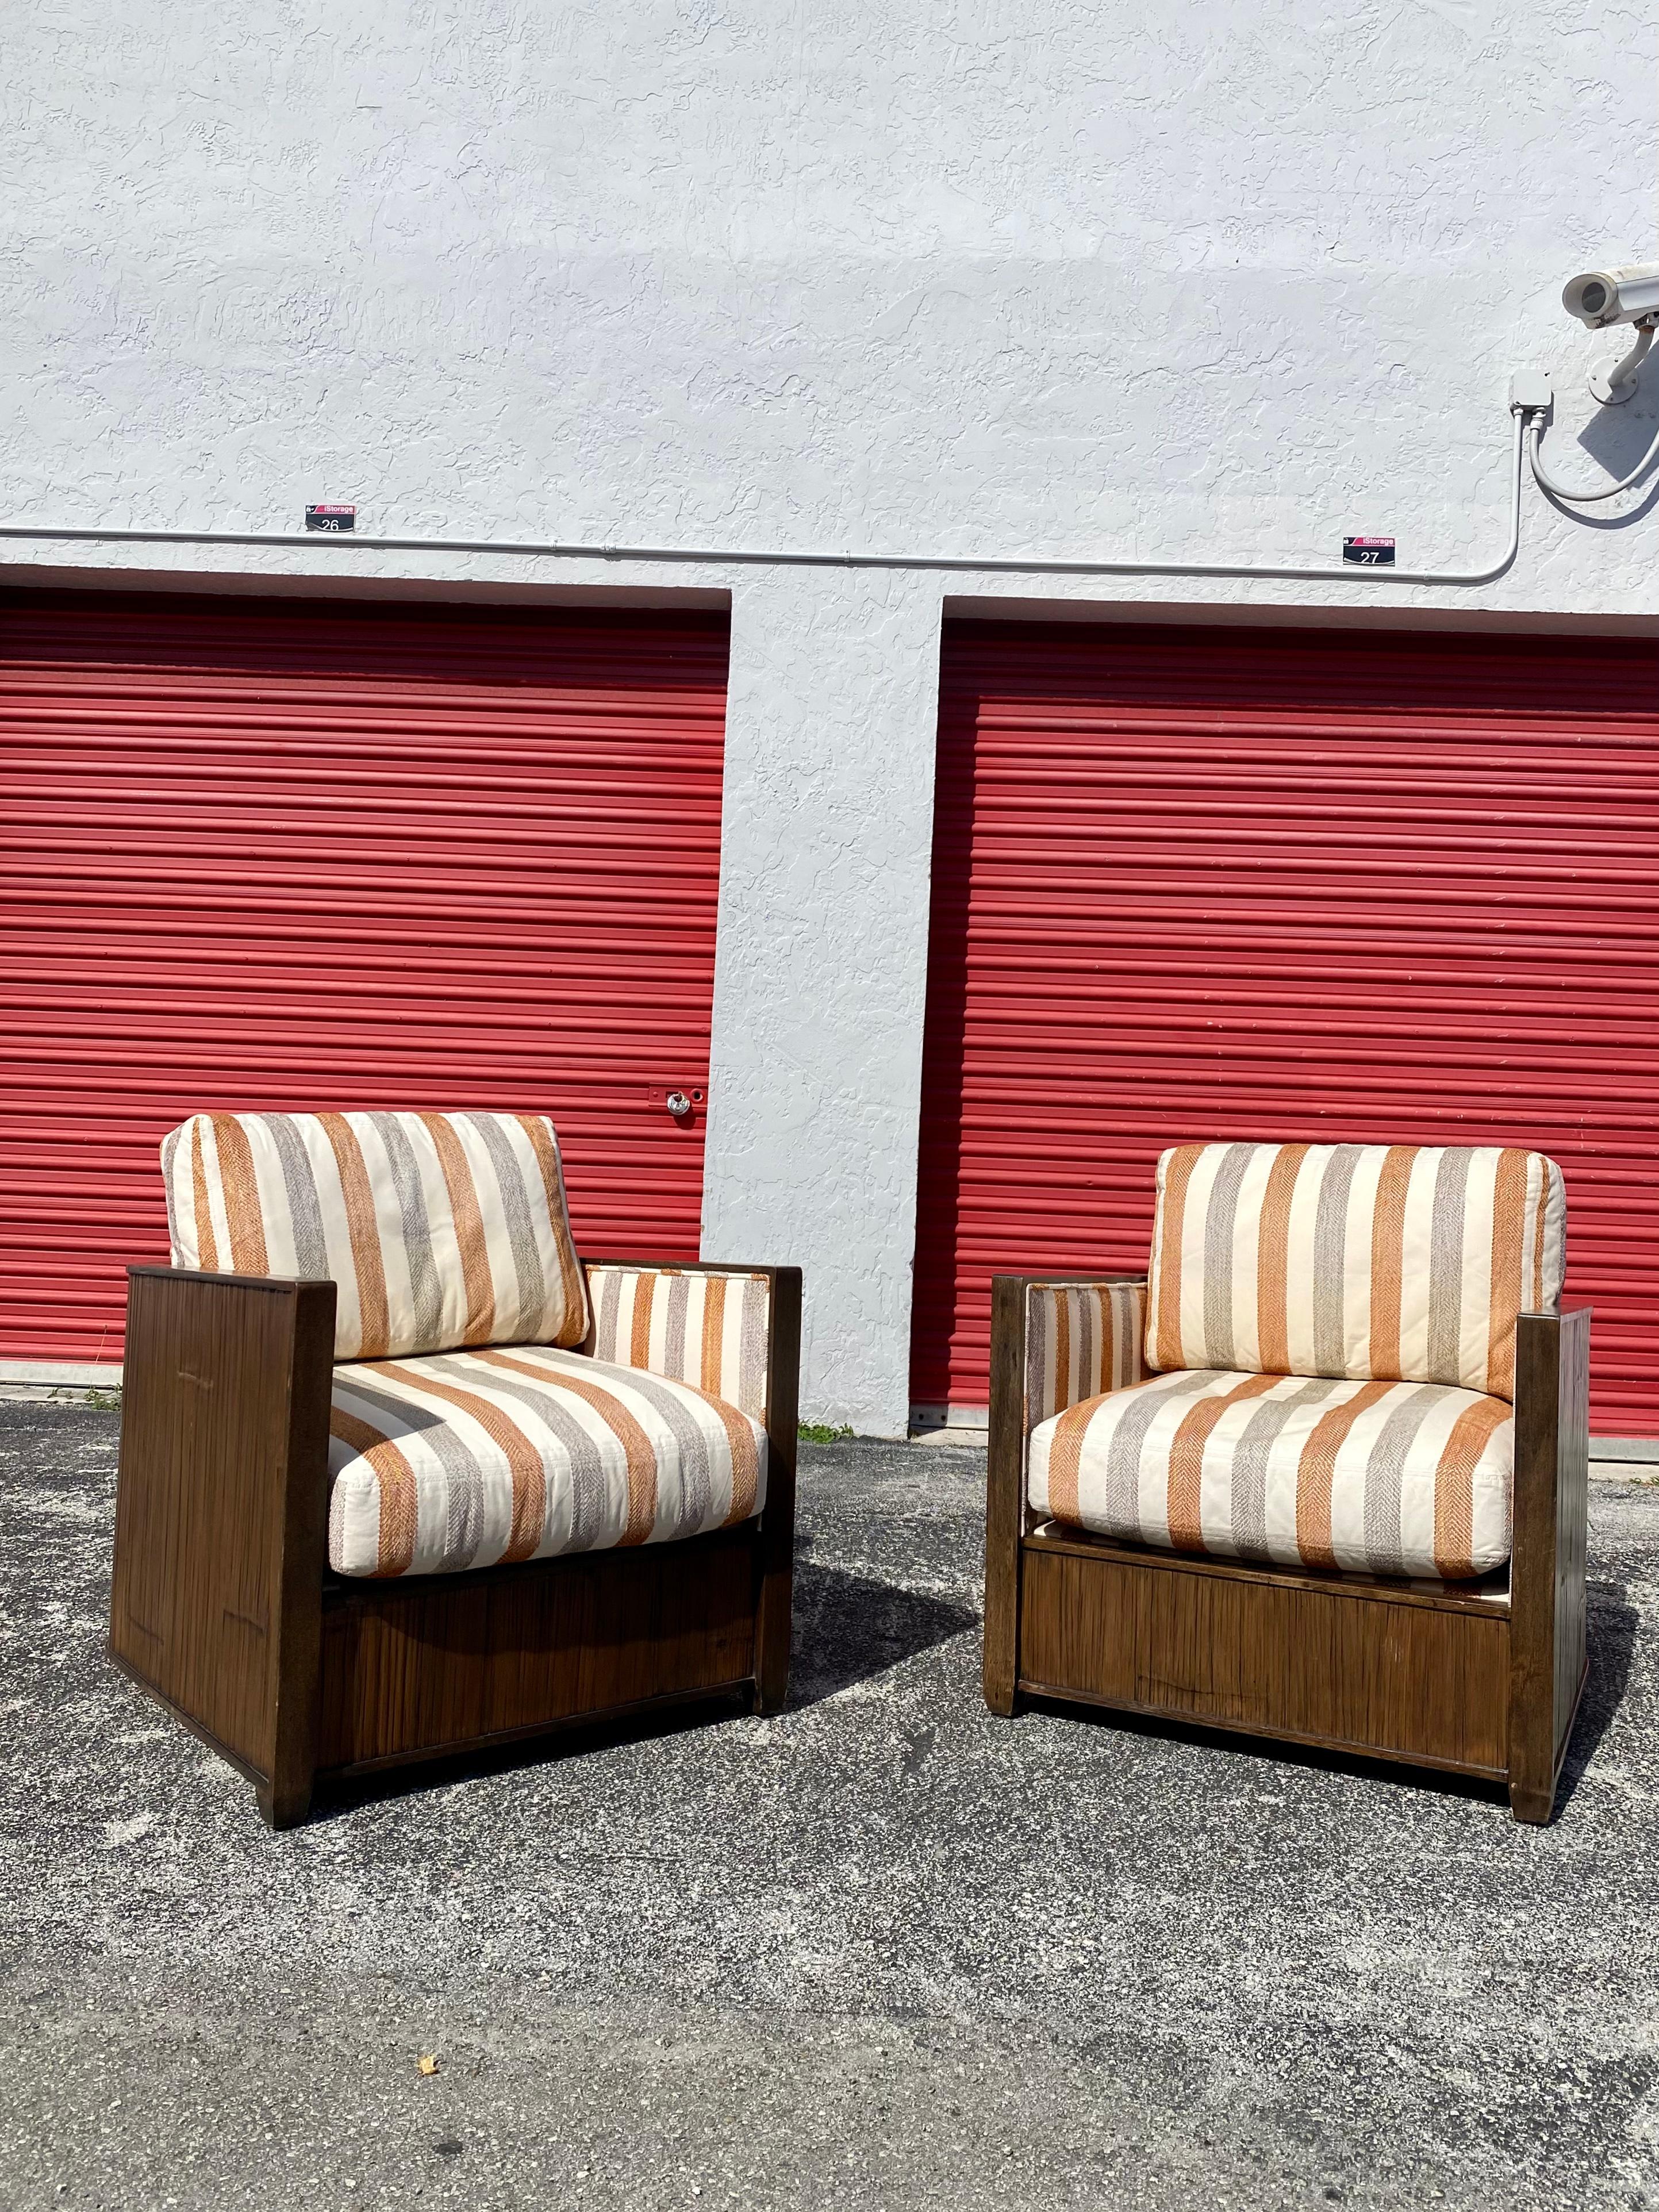 Äußerst selten! Ein dramatisches Paar organischer Holzstühle mit Tonnenrücken von McGuire. Die Stühle haben einen leicht tonnenförmigen Rattan- und Holzrahmen. Vollständig gepolstert mit dicken gefüllten Kissen für ultimativen Komfort. Gehäuse aus